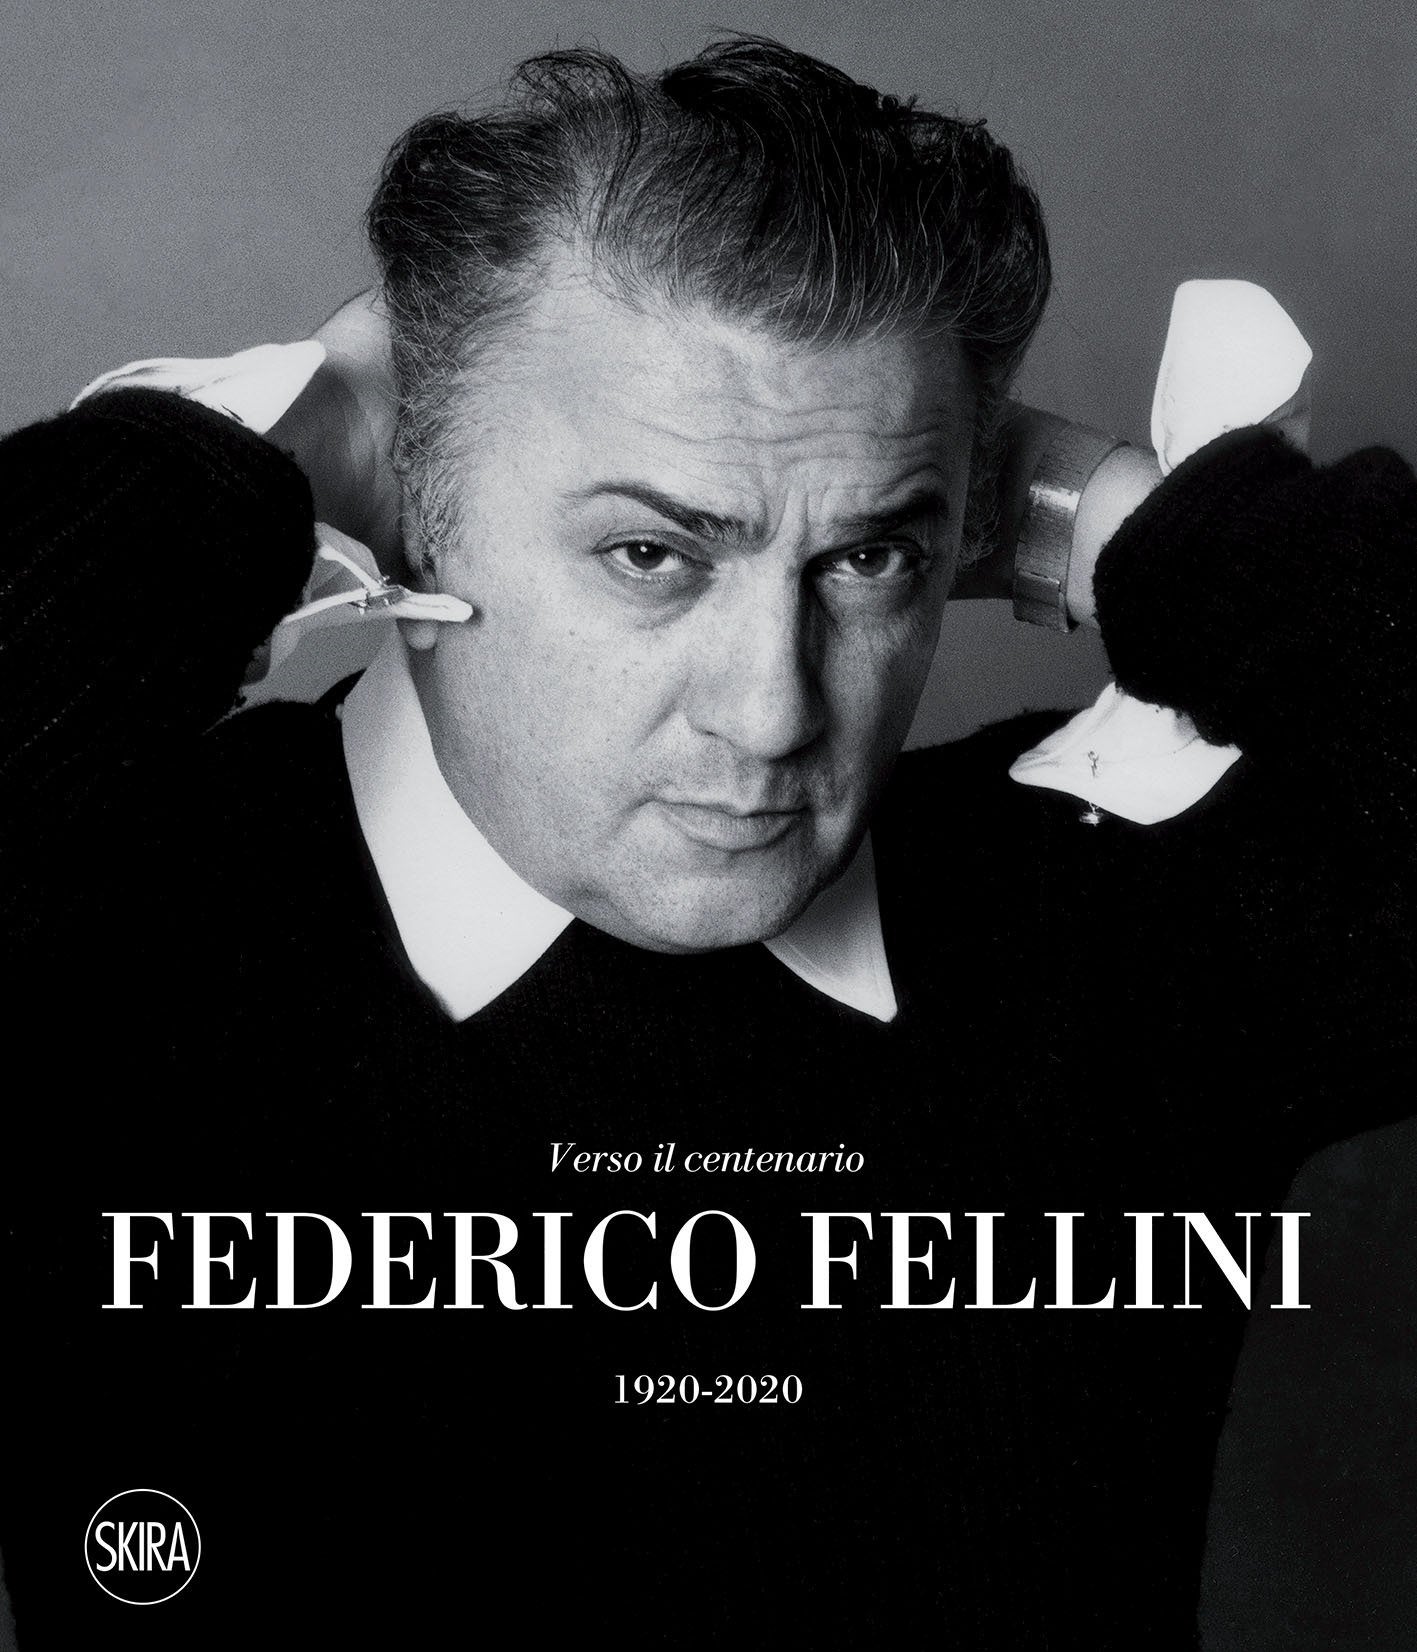 Песня федерико феллини клип. Федерико Феллини актер. Федерико Феллини певец. Федерико Феллини (1920-1993). Федерико Феллини фото.